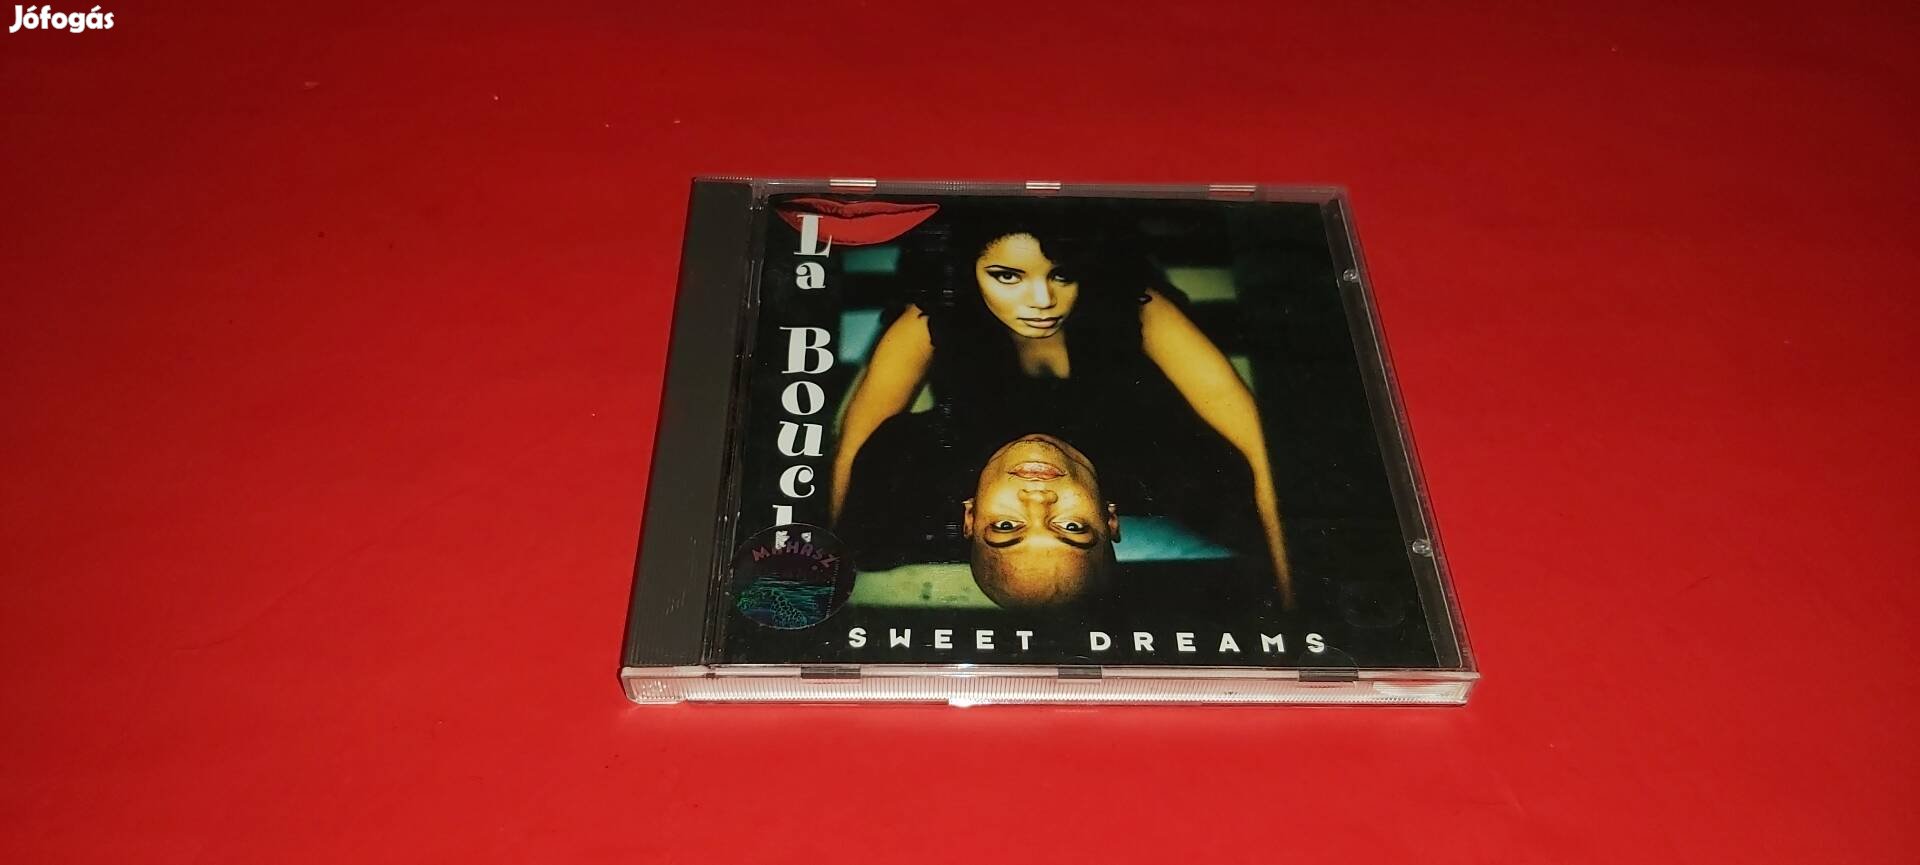 La Bouche Sweet dreams Cd 1995